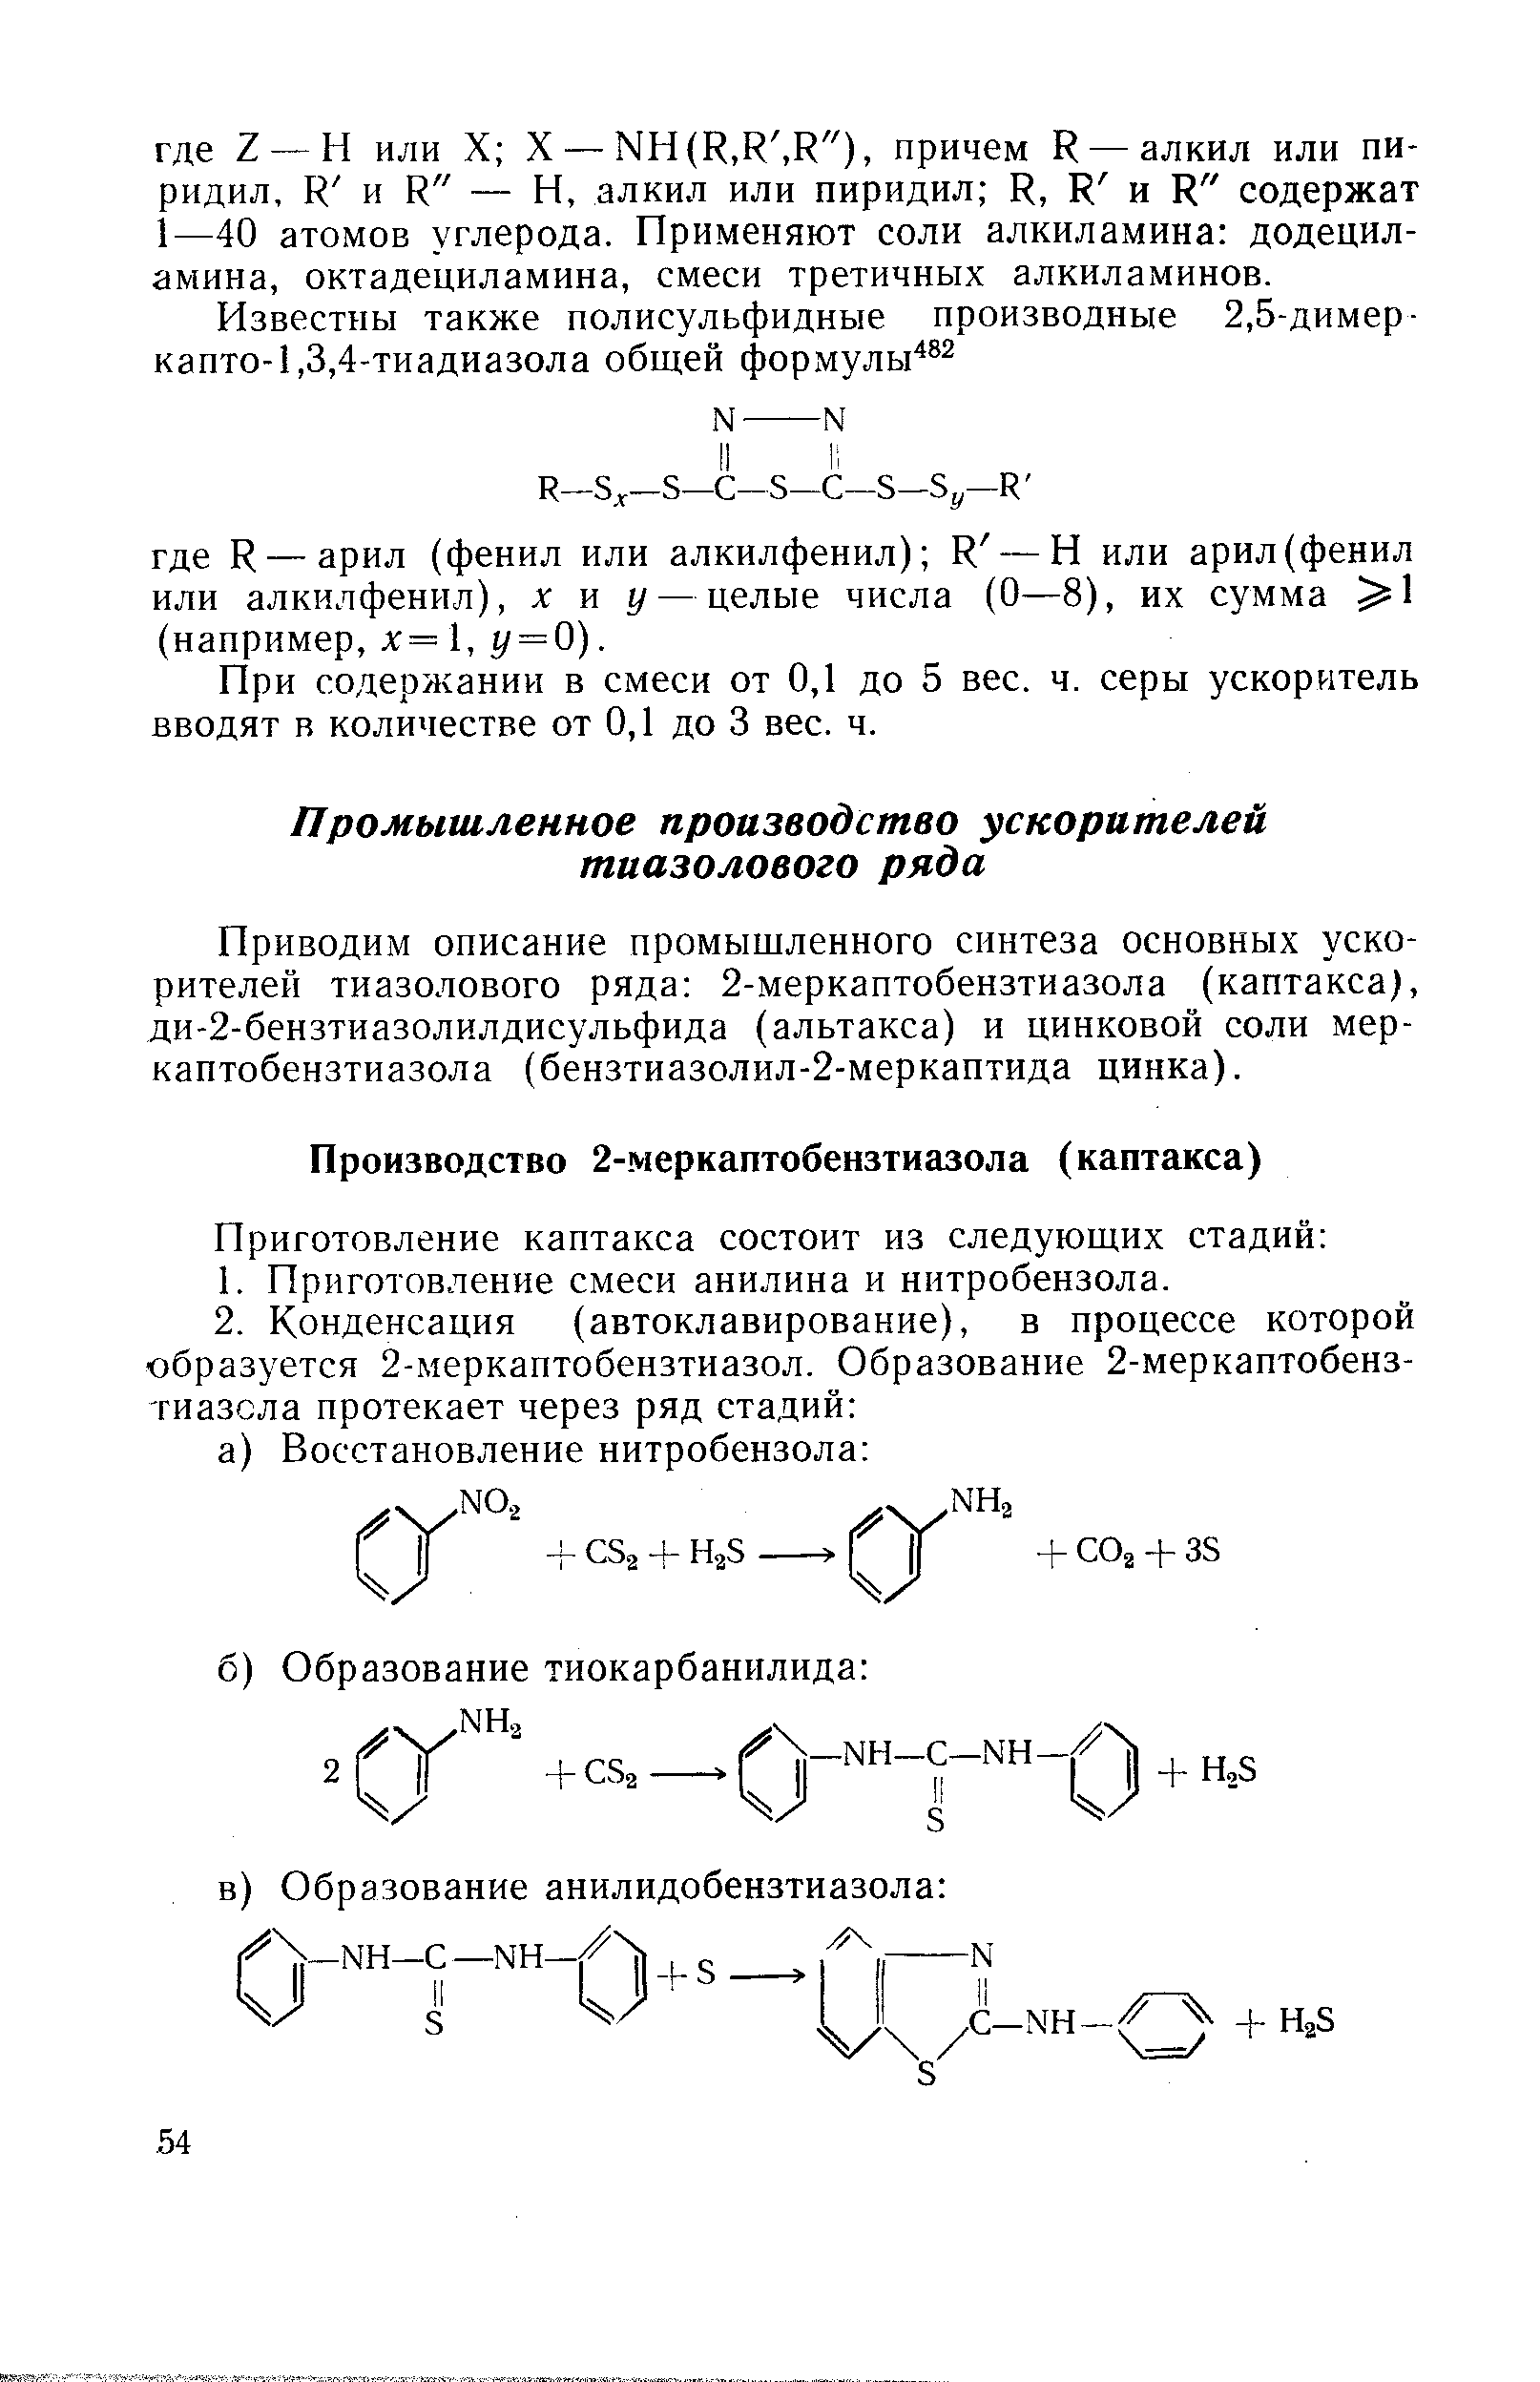 Приводим описание промышленного синтеза основных ускорителей тиазолового ряда 2-меркаптобензтиазола (каптакса), ди-2-бензтиазолилдисульфида (альтакса) и цинковой соли меркаптобензтиазола (бензтиазолил-2-меркаптида цинка).